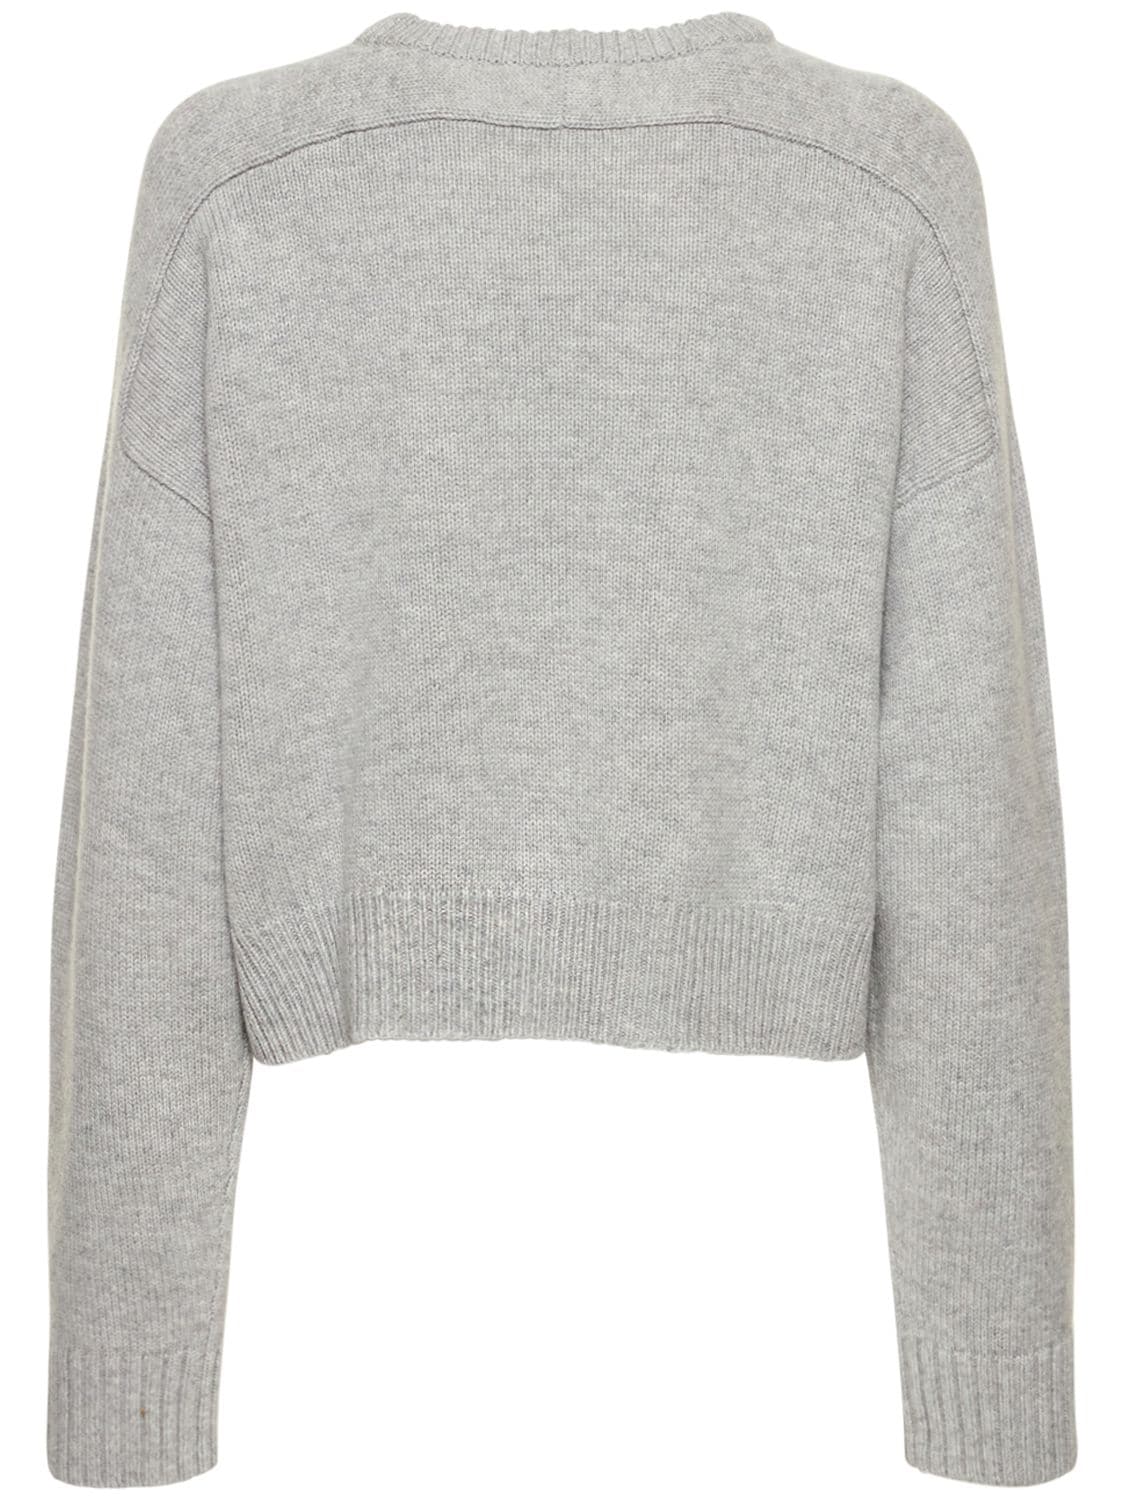 Shop Loulou Studio Bruzzi Wool & Cashmere Sweater In Grey